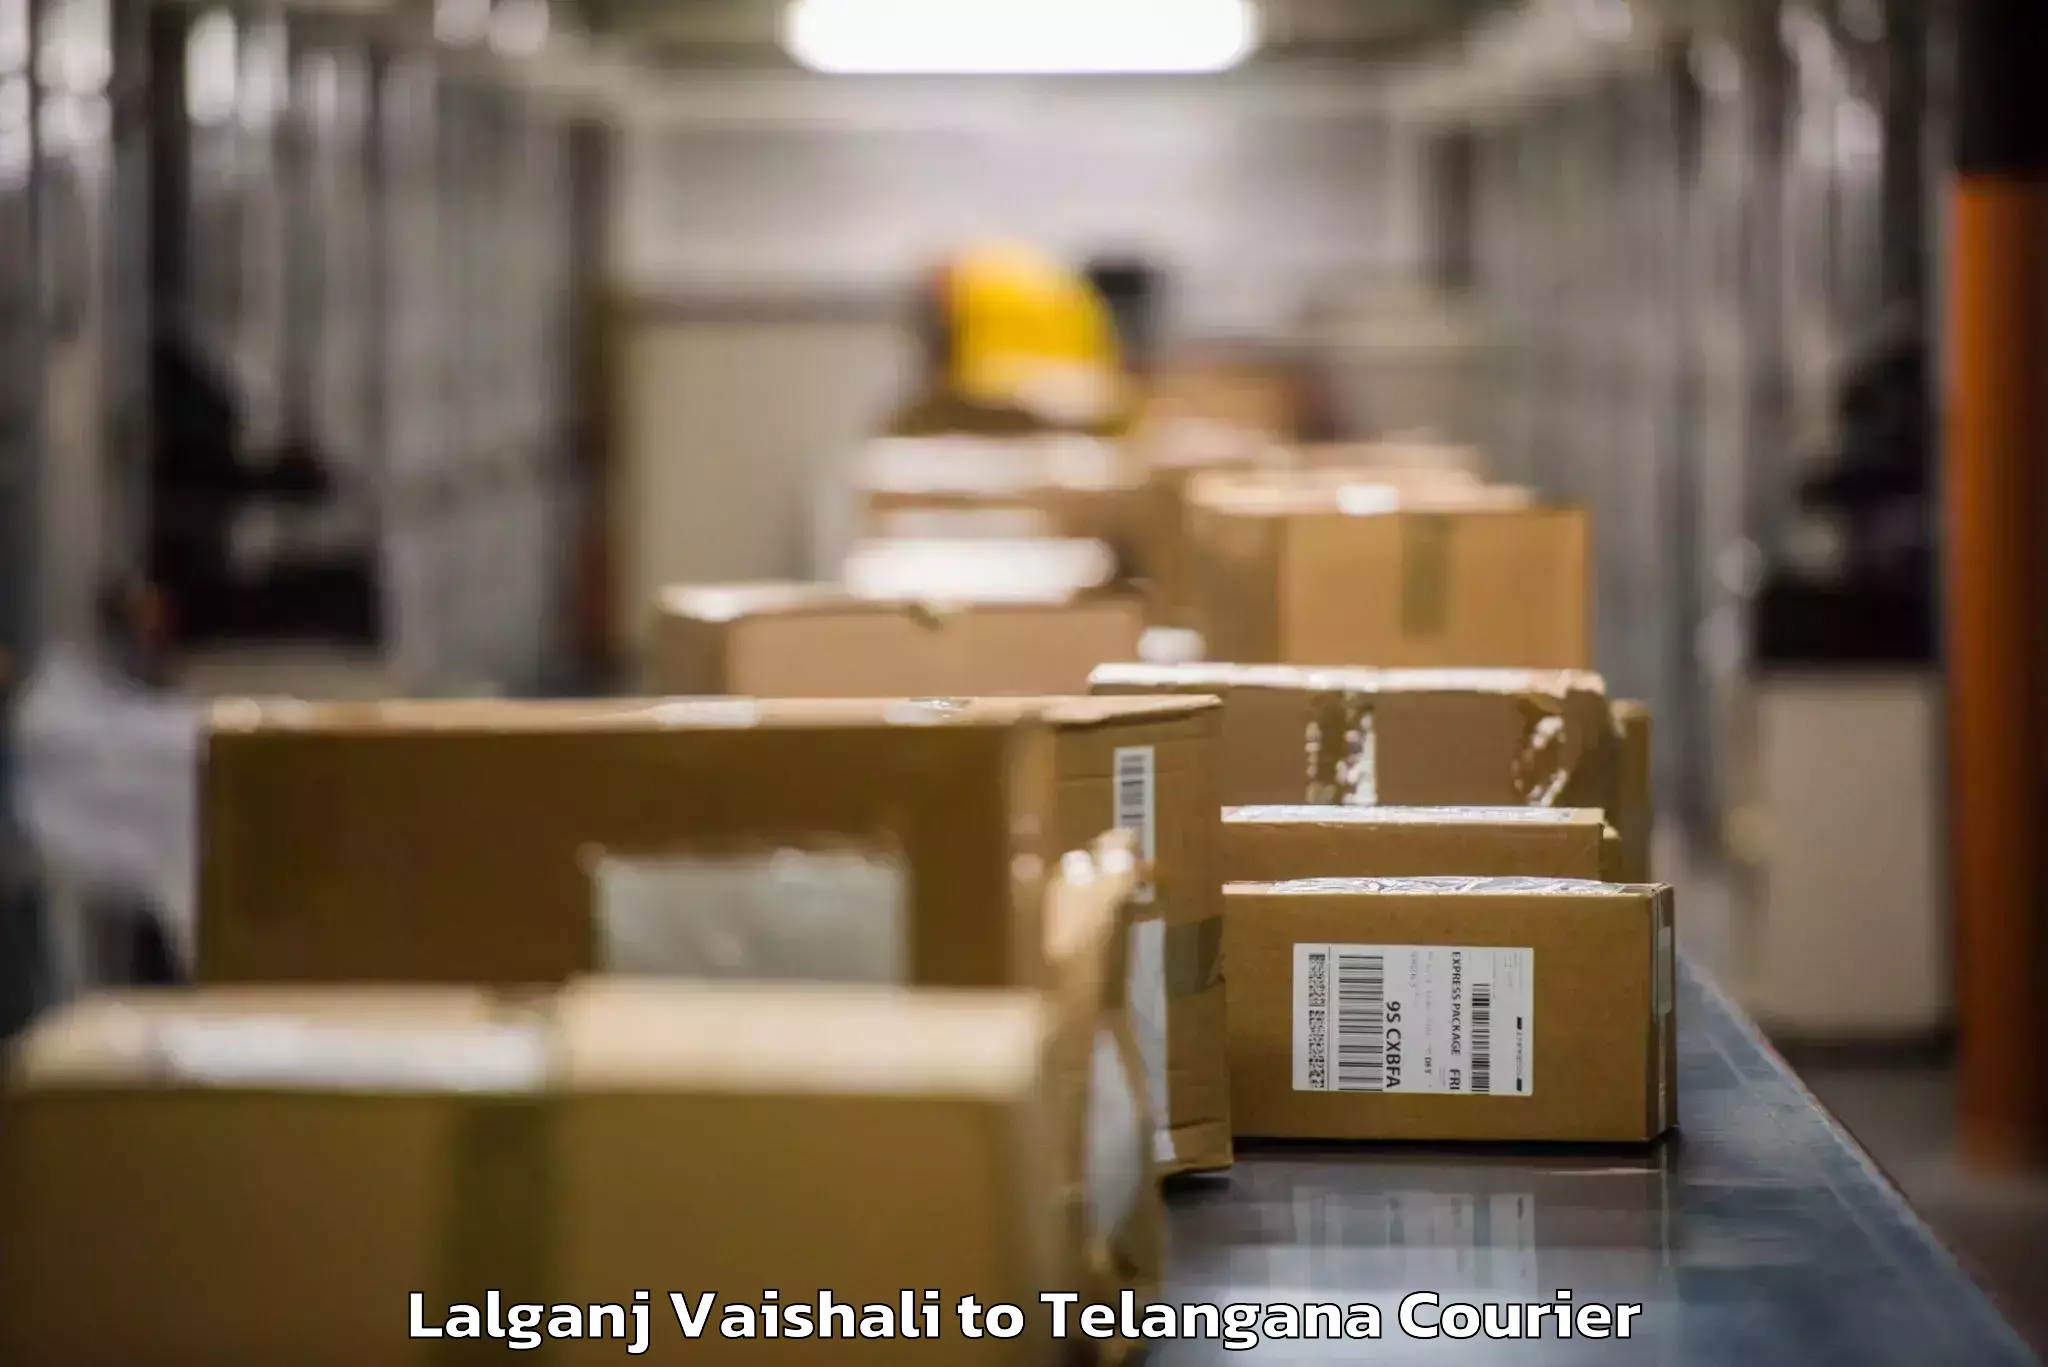 Luggage delivery operations Lalganj Vaishali to Madgulapally